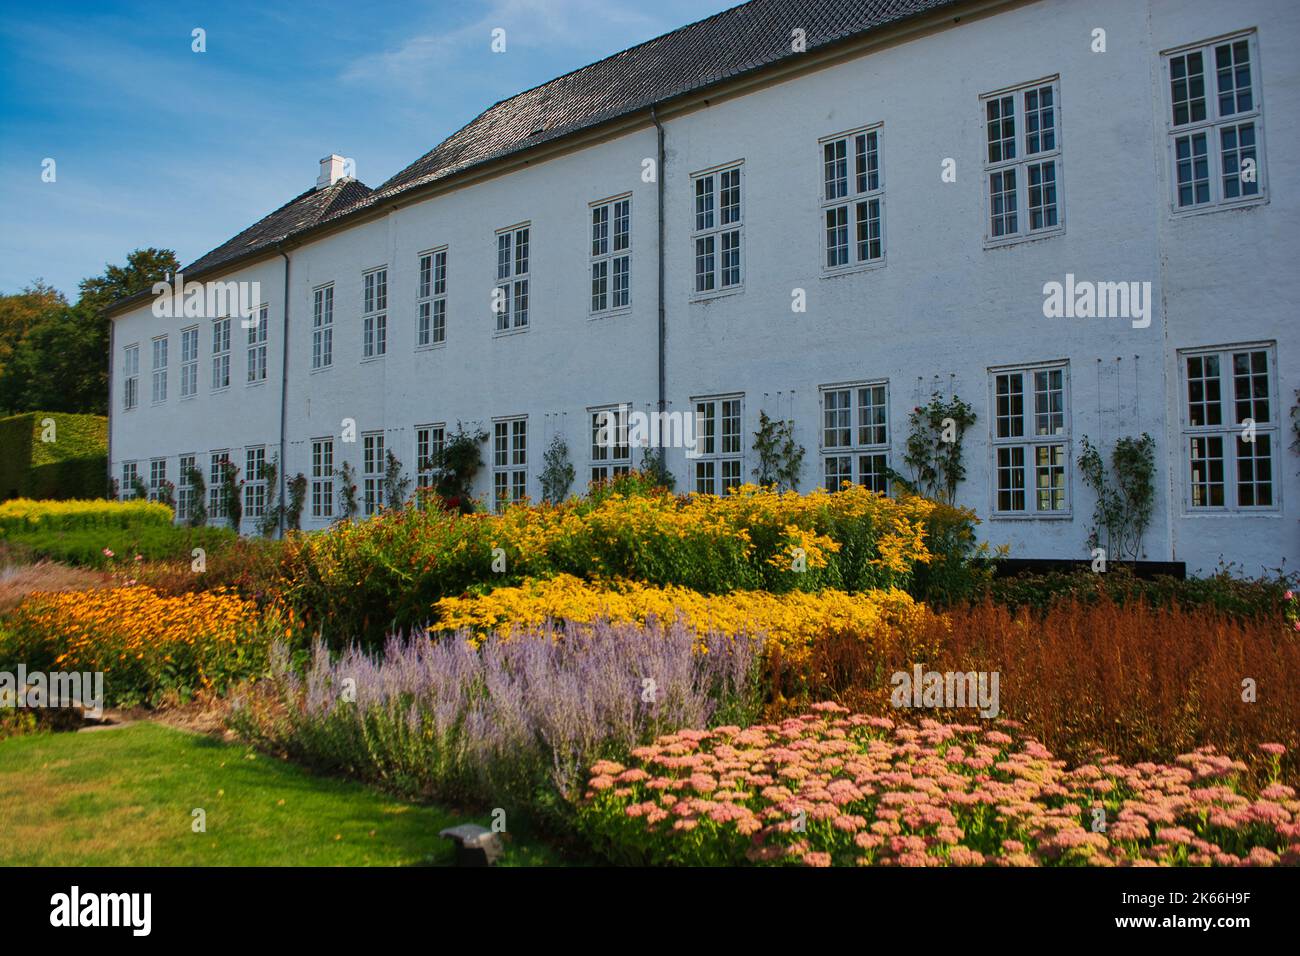 Grasten Slot - Gravenstein Castle in Denmark on a bright summer day - the summer residence of the danish royal family Stock Photo